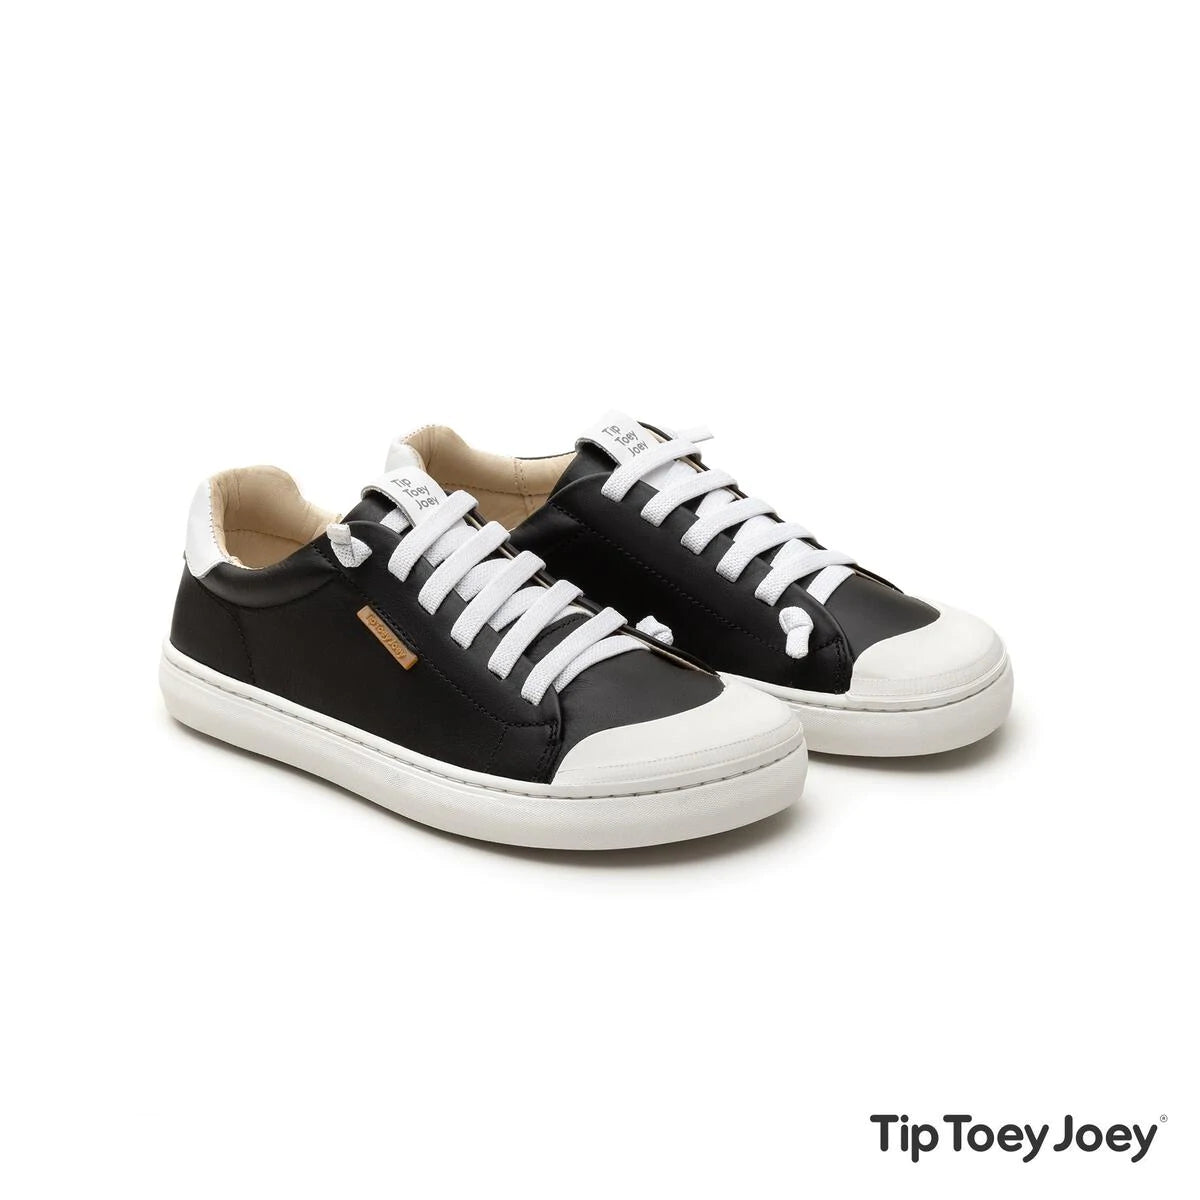 Joey Slip-On Sneakers